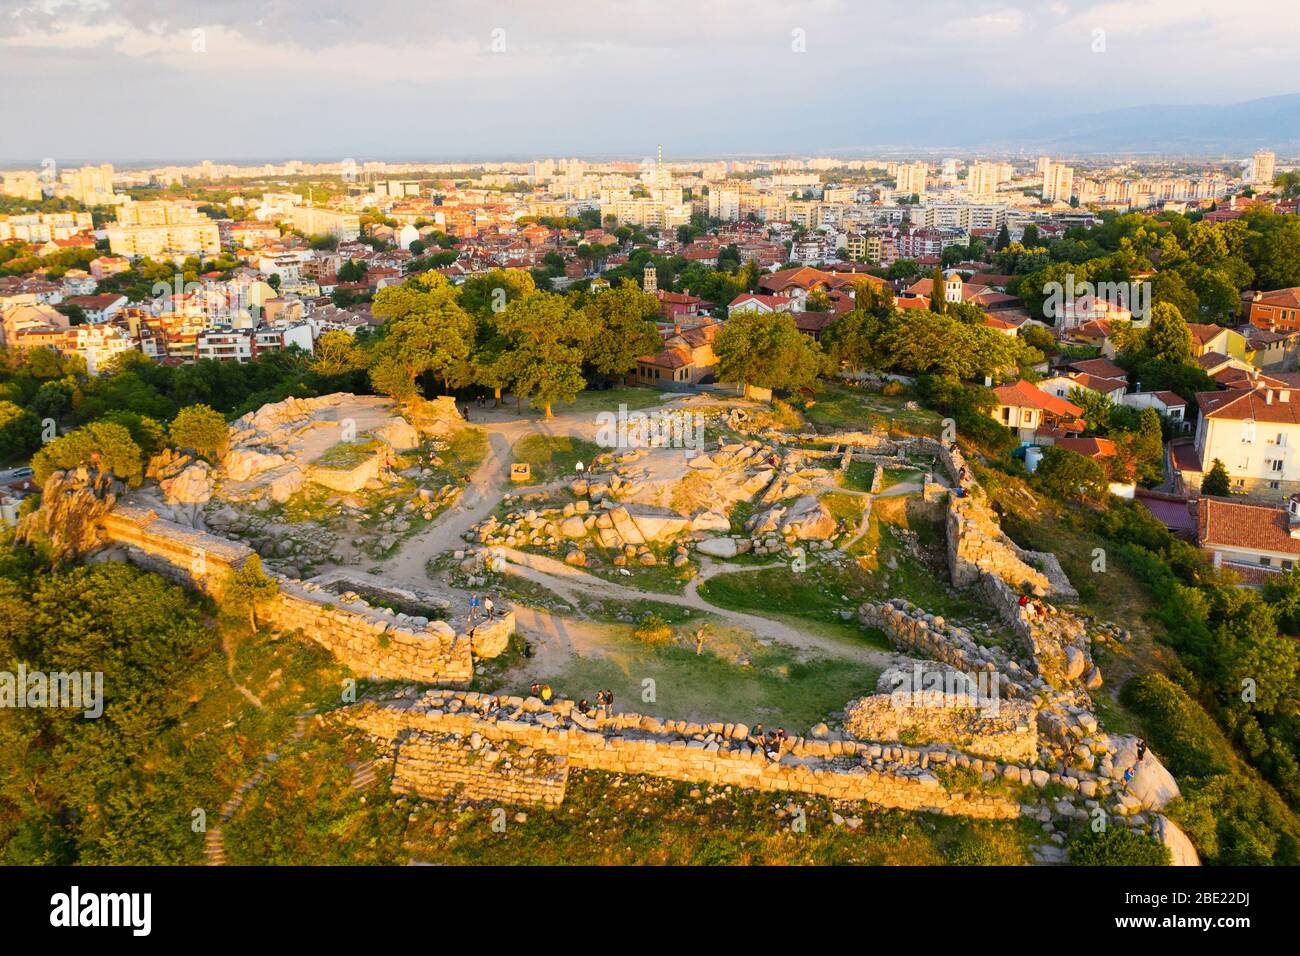 Europe, Bulgarie, Plovdiv, vue aérienne des ruines d'Eumolpias, une colonie de Thrace en 5000 av. J.-C. Banque D'Images